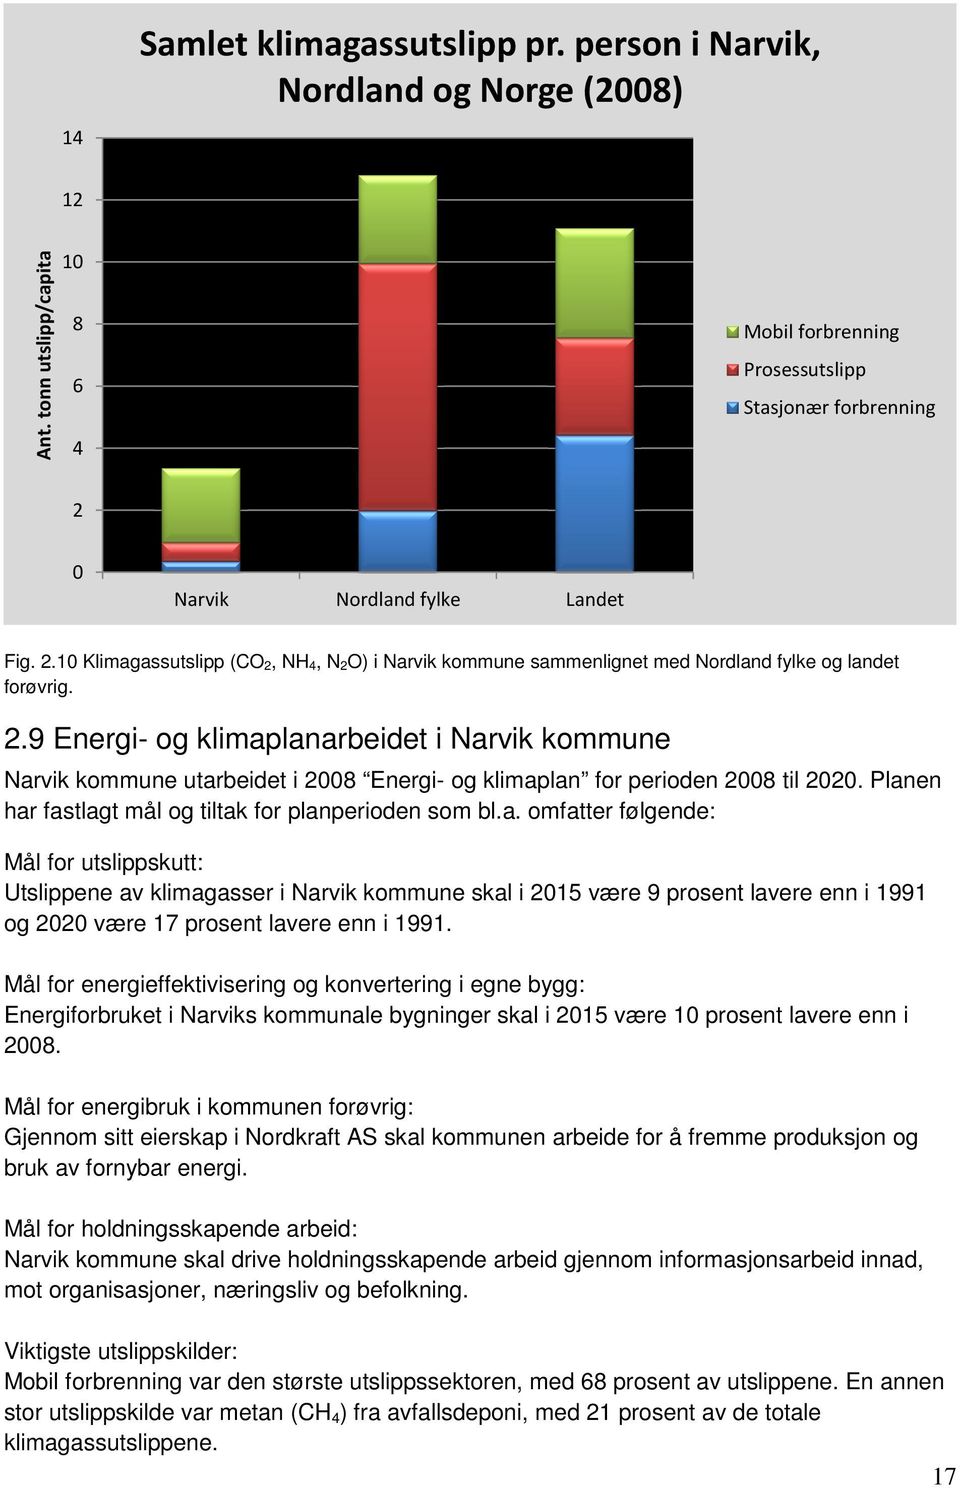 2.9 Energi- og klimaplanarbeidet i Narvik kommune Narvik kommune utarbeidet i 2008 Energi- og klimaplan for perioden 2008 til 2020. Planen har fastlagt mål og tiltak for planperioden som bl.a. omfatter følgende: Mål for utslippskutt: Utslippene av klimagasser i Narvik kommune skal i 2015 være 9 prosent lavere enn i 1991 og 2020 være 17 prosent lavere enn i 1991.